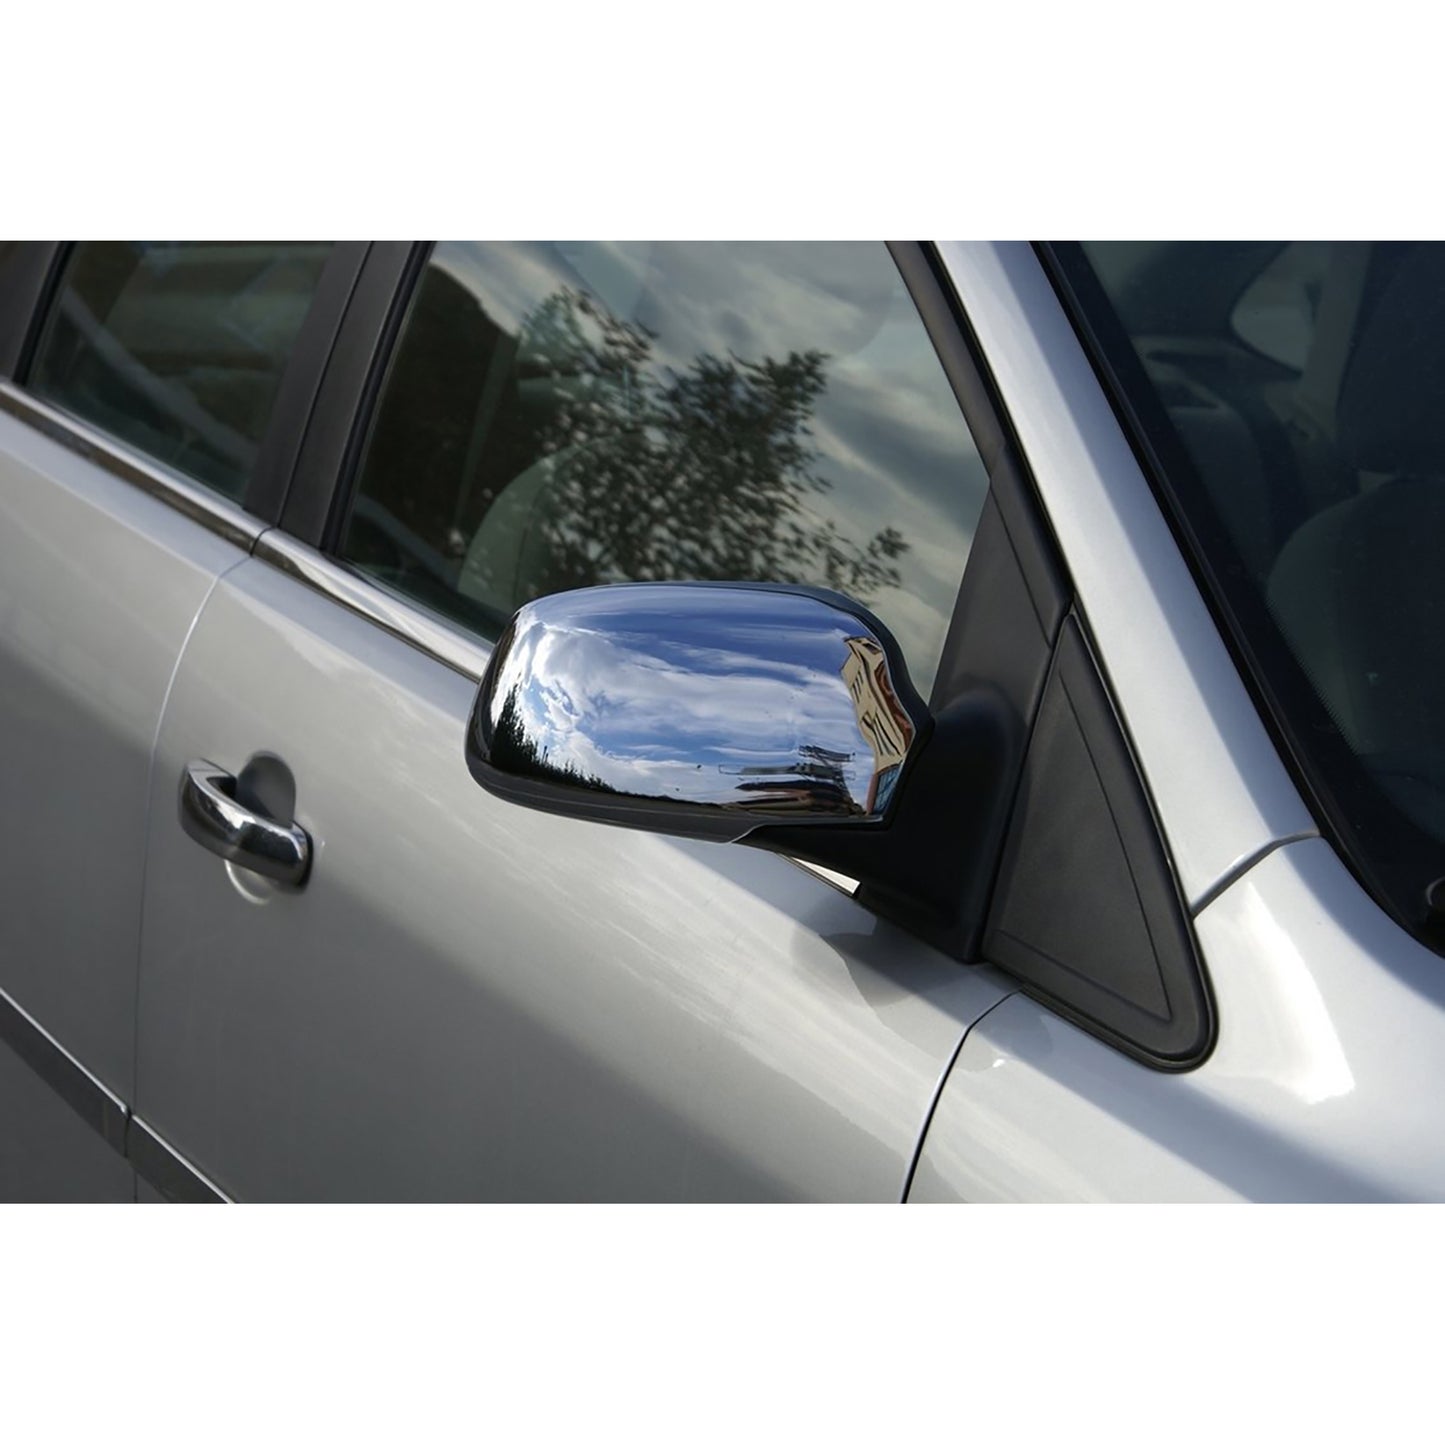 Ford Focus Krom Ayna Kapağı Aksesuarları Detaylı Resimleri, Kampanya bilgileri ve fiyatı - 1